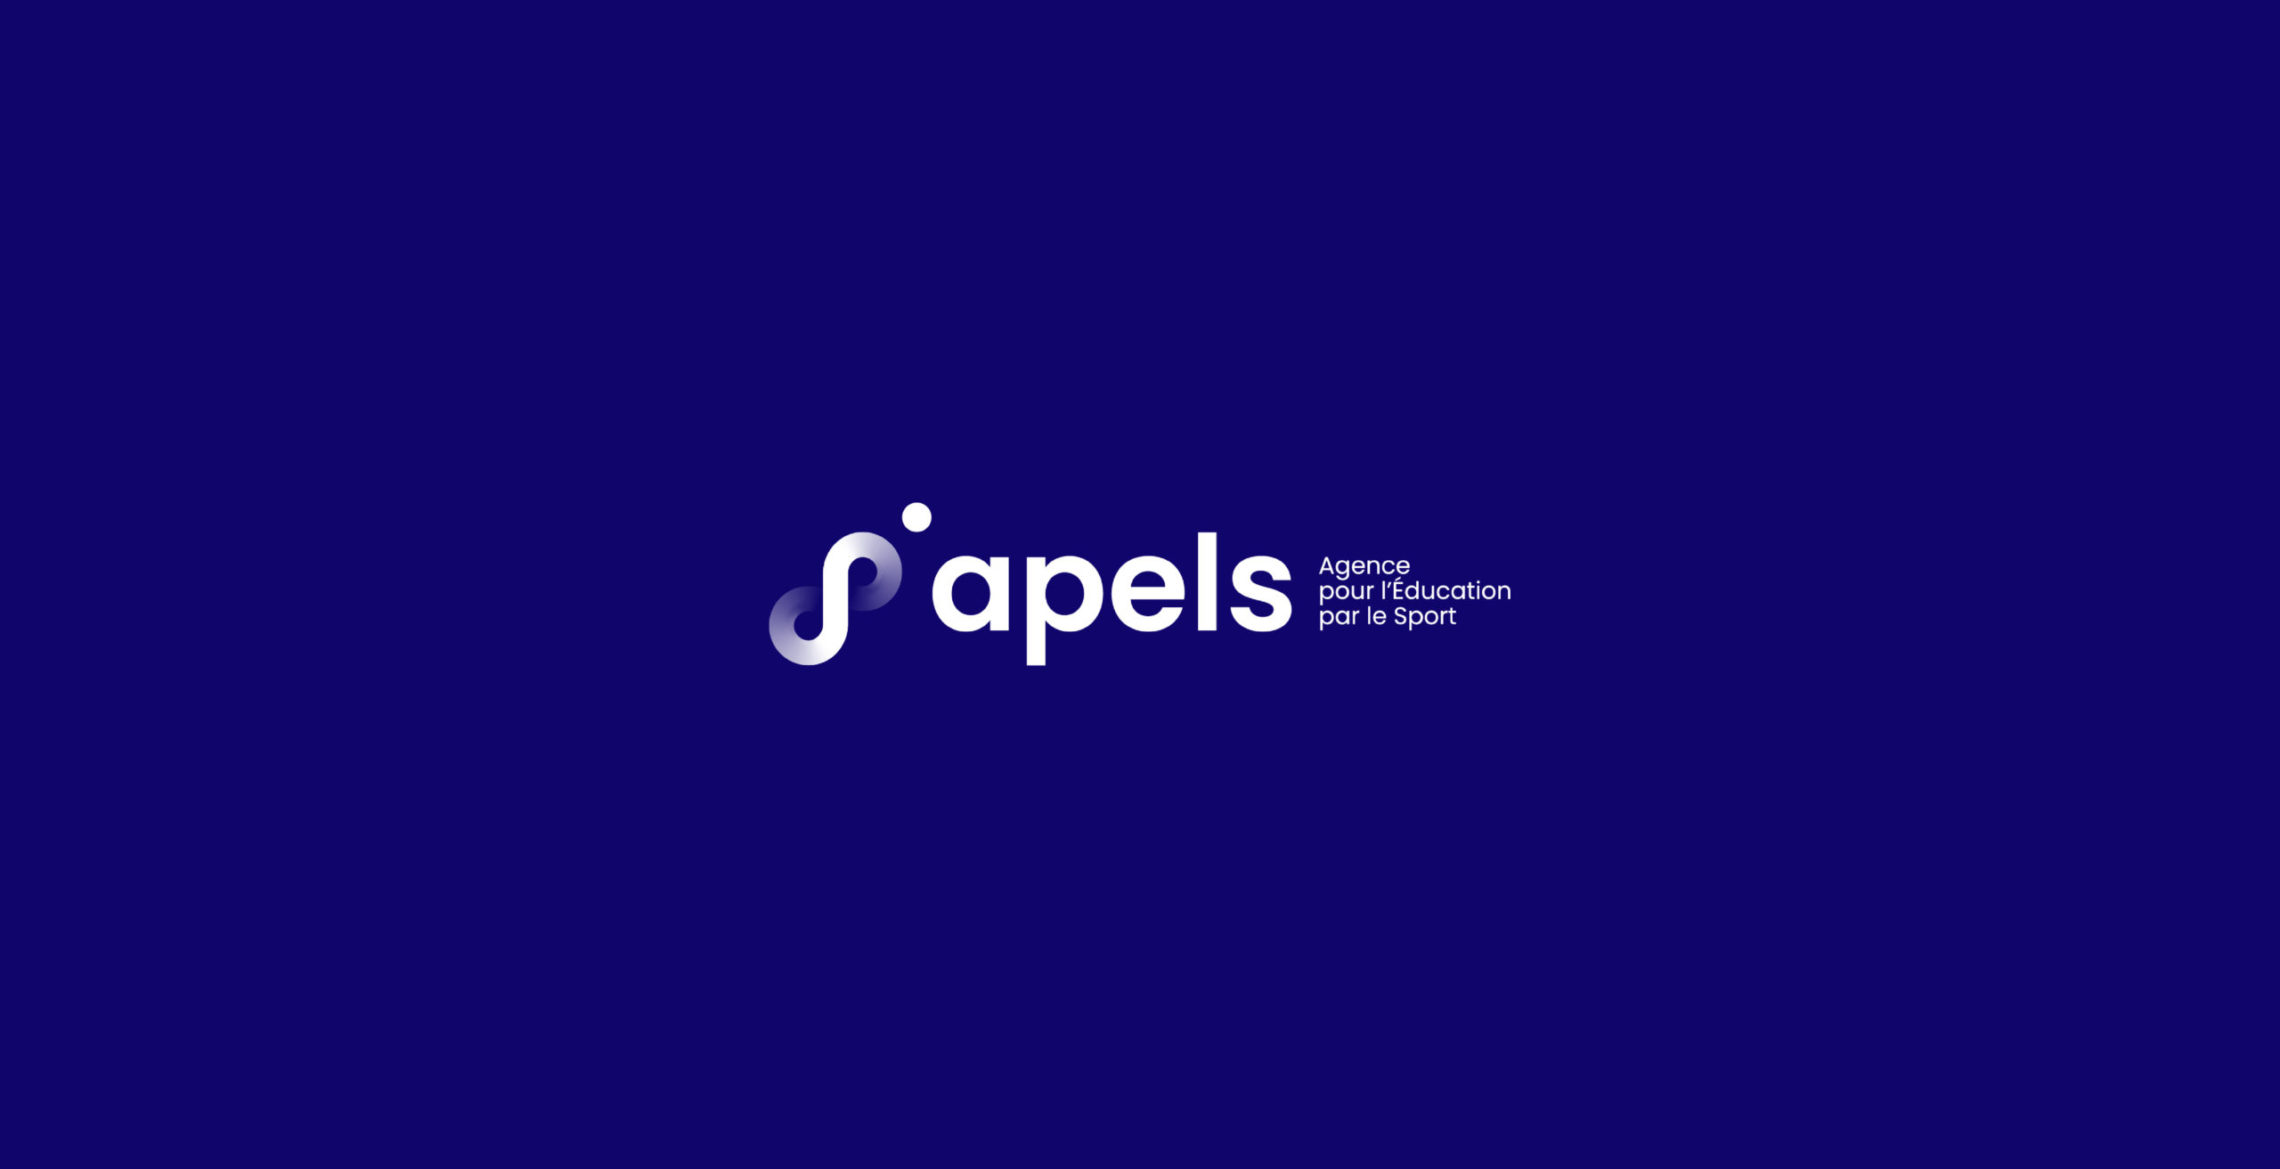 apels_charte-graphique-agence-education-pour-le-sport